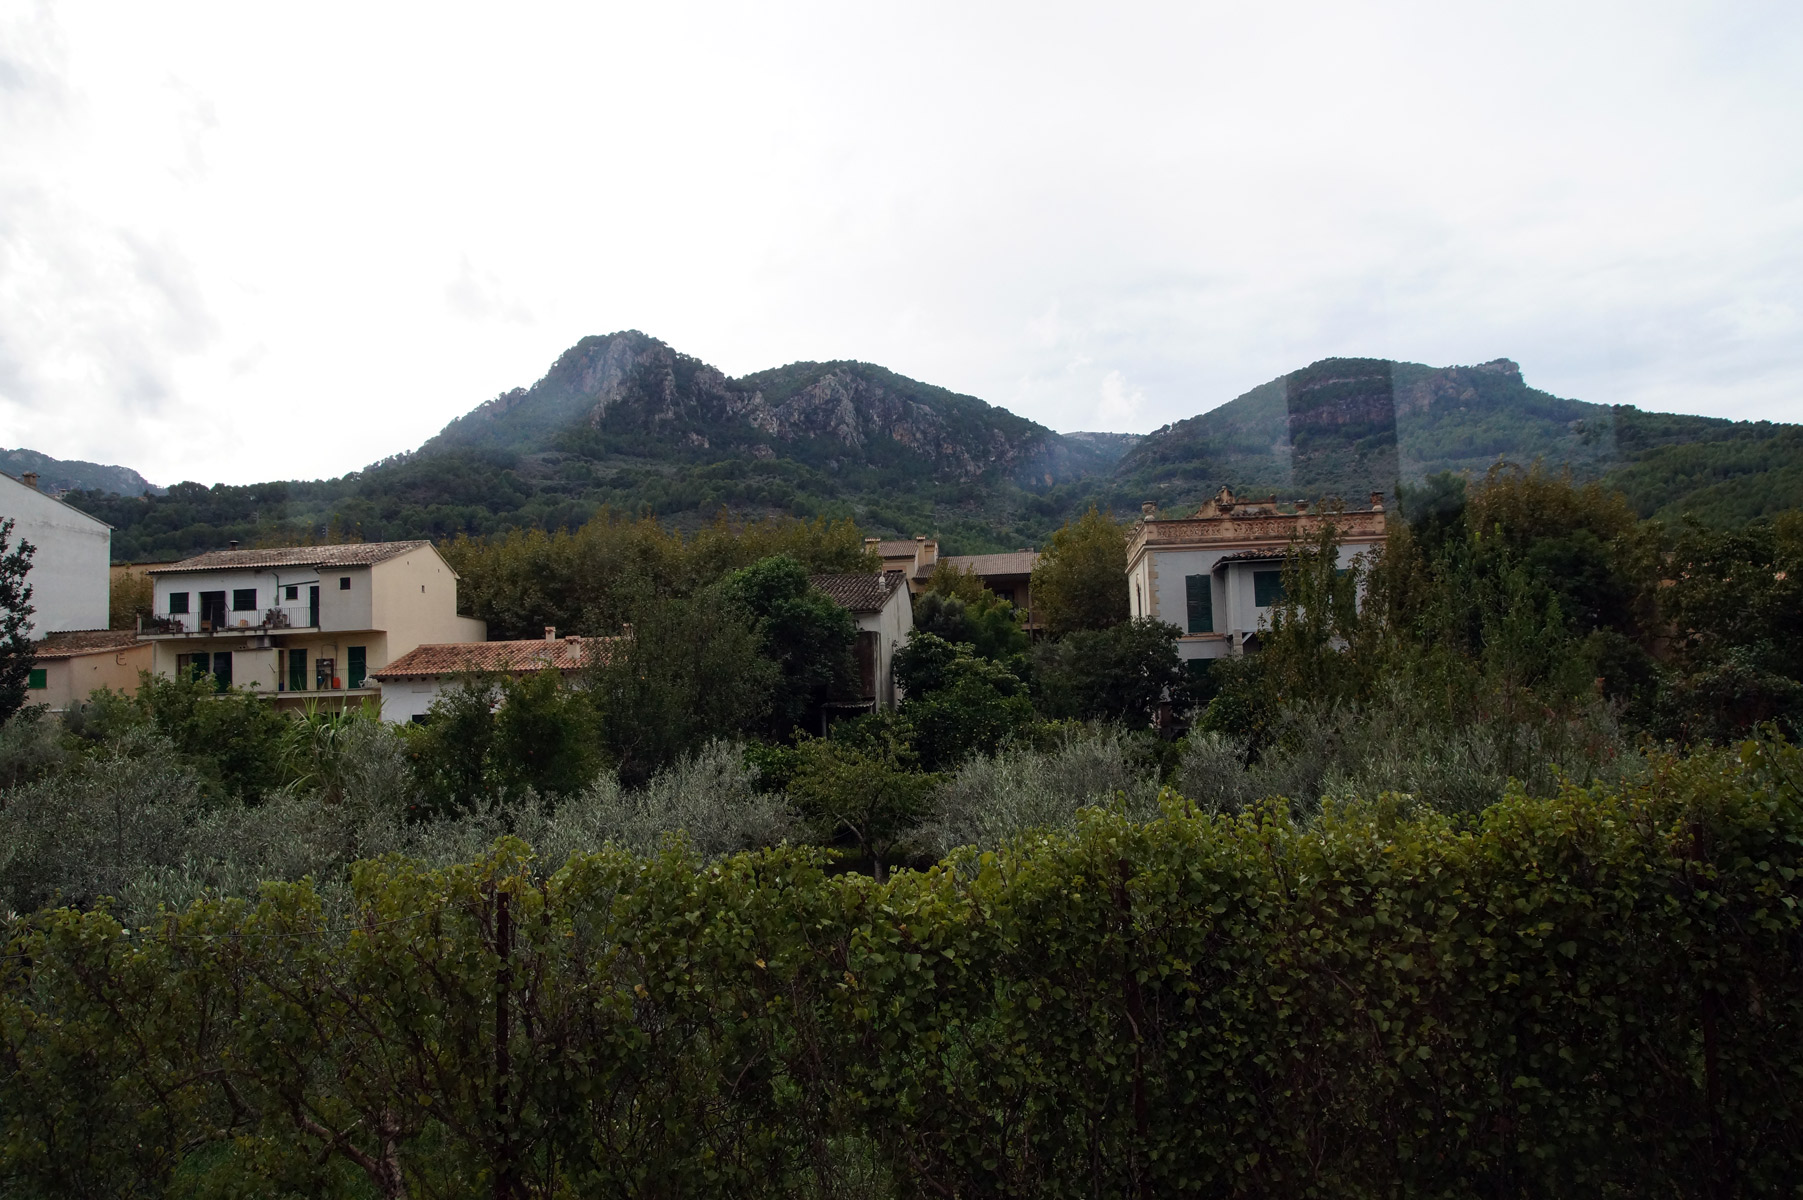 Живые изгороди и оливковые сады.

Испания, Майорка, осень 2019